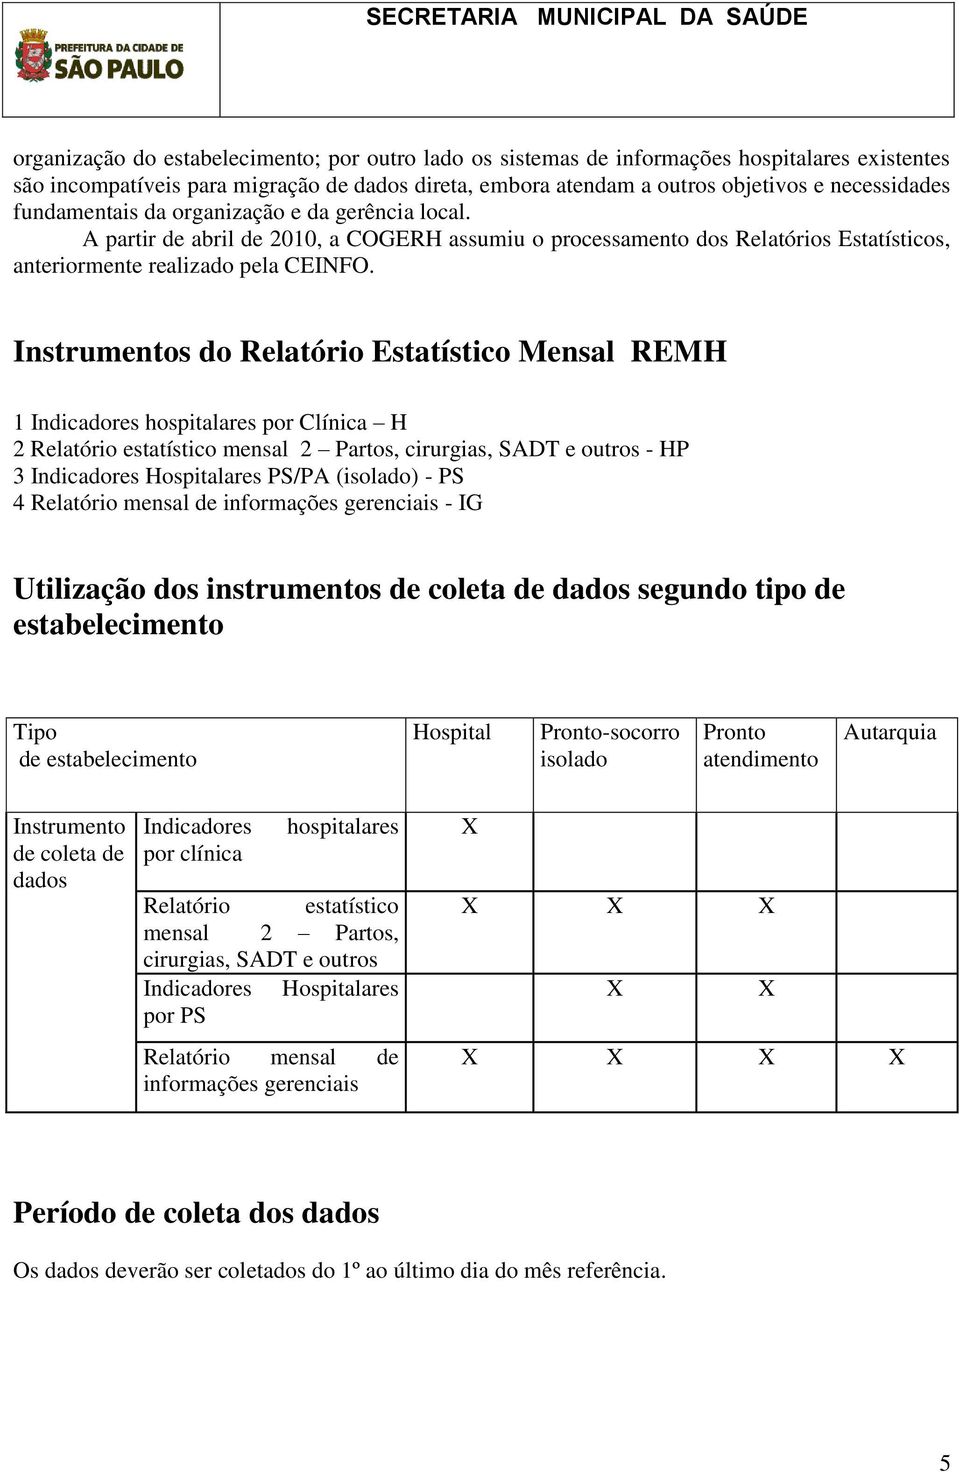 Instrumentos do Relatório Estatístico Mensal REMH 1 Indicadores hospitalares por Clínica H 2 Relatório estatístico mensal 2 Partos, cirurgias, SADT e outros - HP 3 Indicadores Hospitalares PS/PA